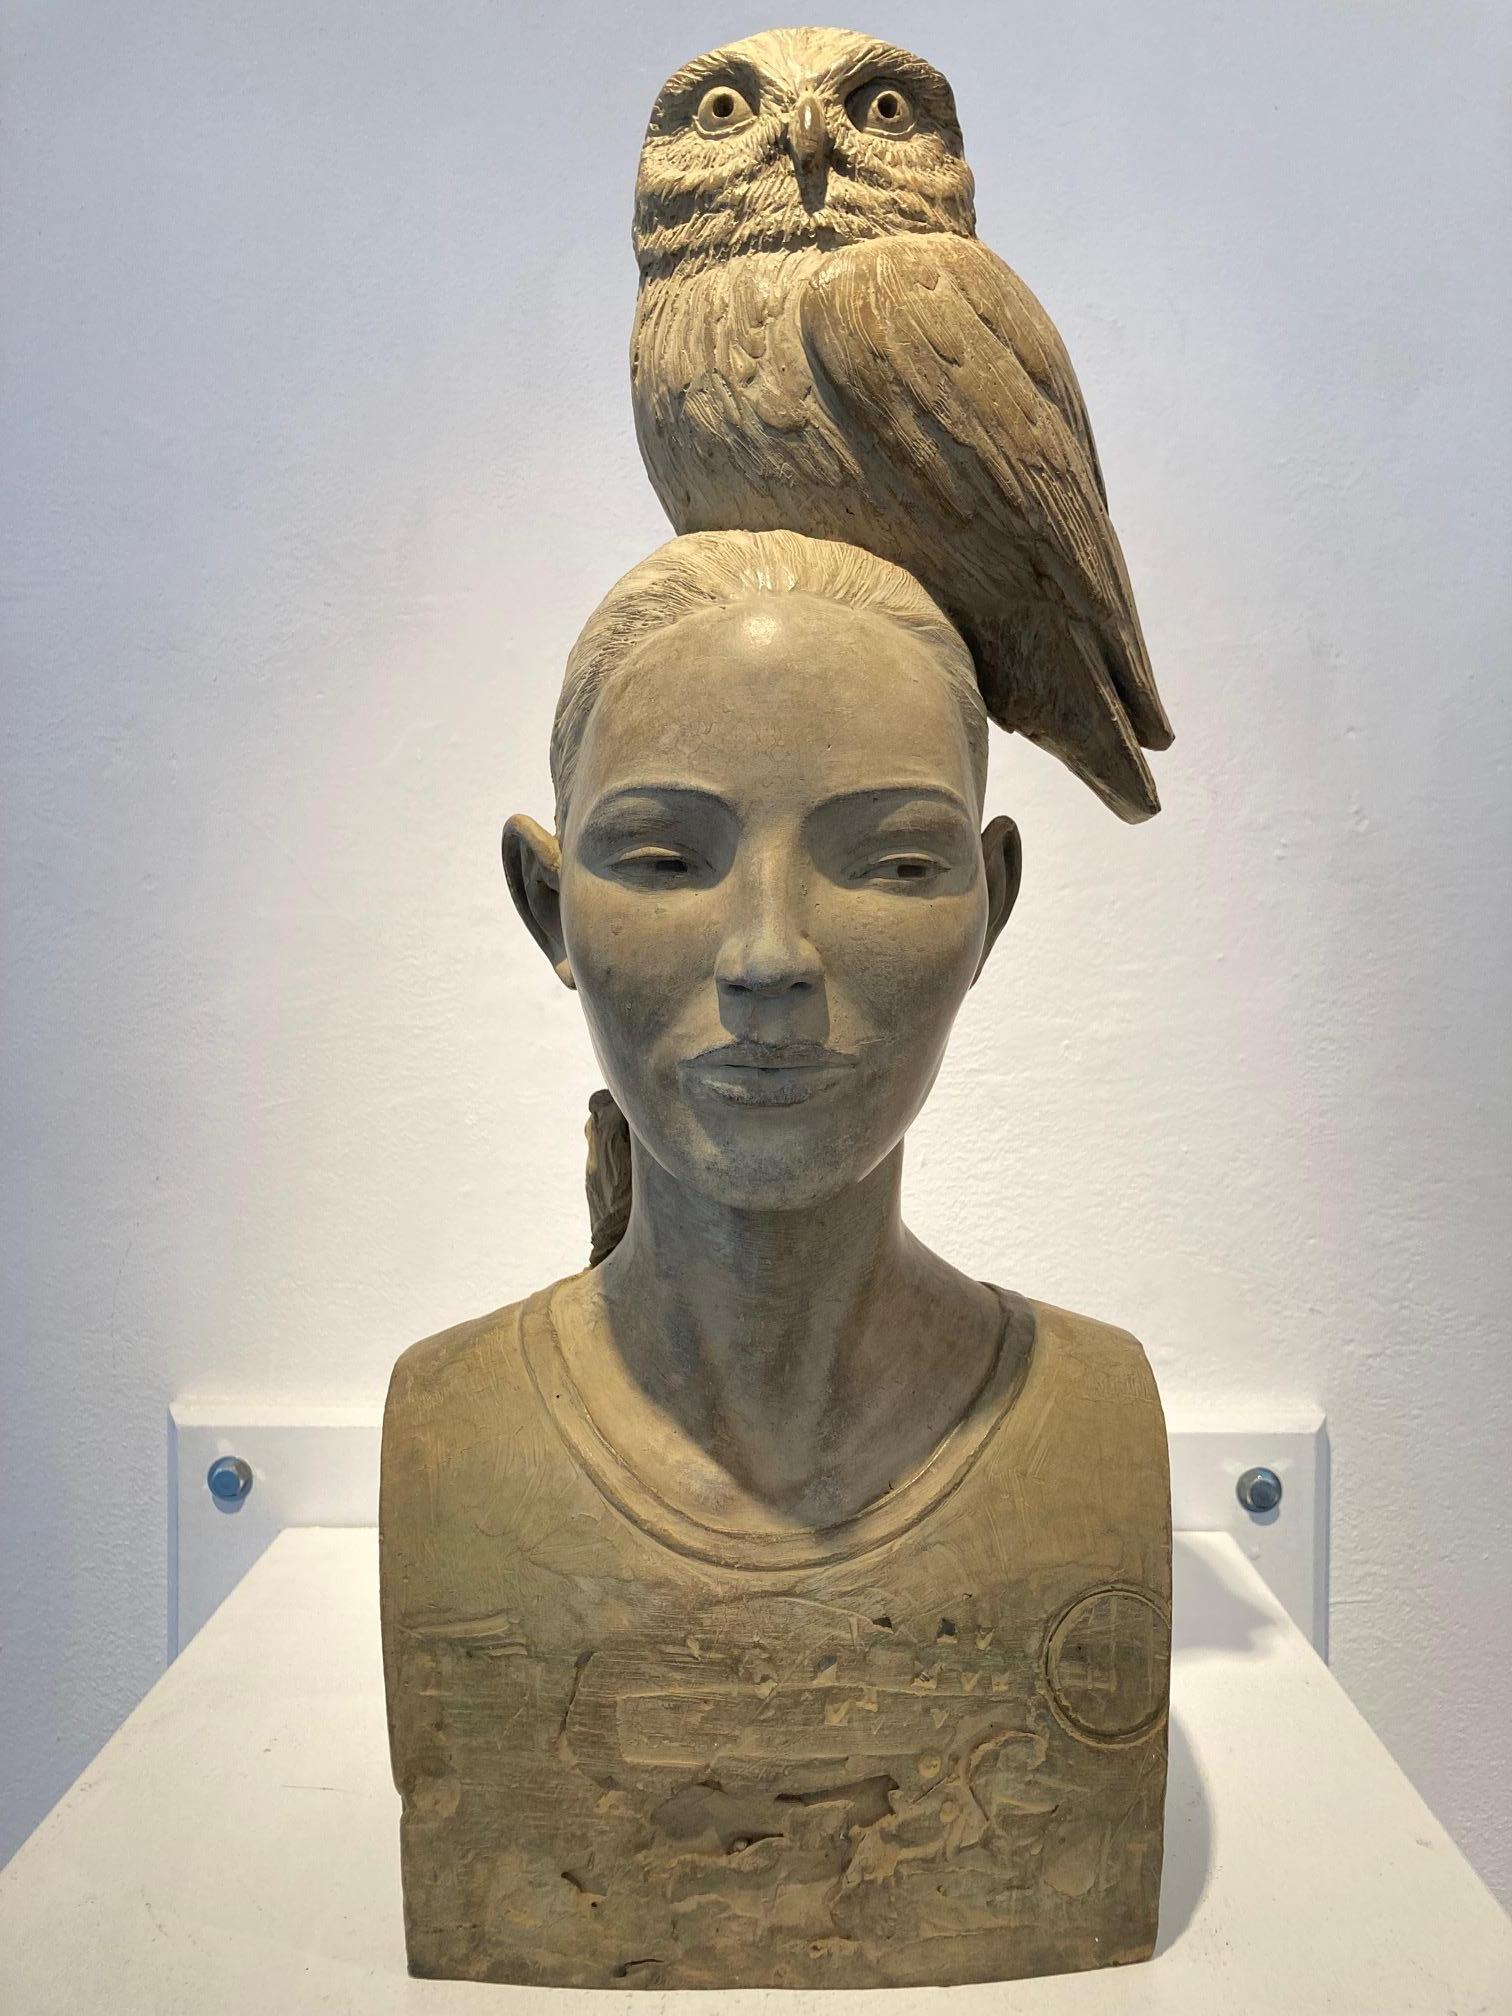 Uil Owl Bronzeskulptur Mädchen mit Eule auf dem Kopf Wisdom Contemporary Vorrätig 
Die Statuen von Erwin Meijer tragen eine erkennbare, persönliche Handschrift.
Sie atmen die Atmosphäre eines erzählenden Gedichts, in dem der Leser nicht nur dem